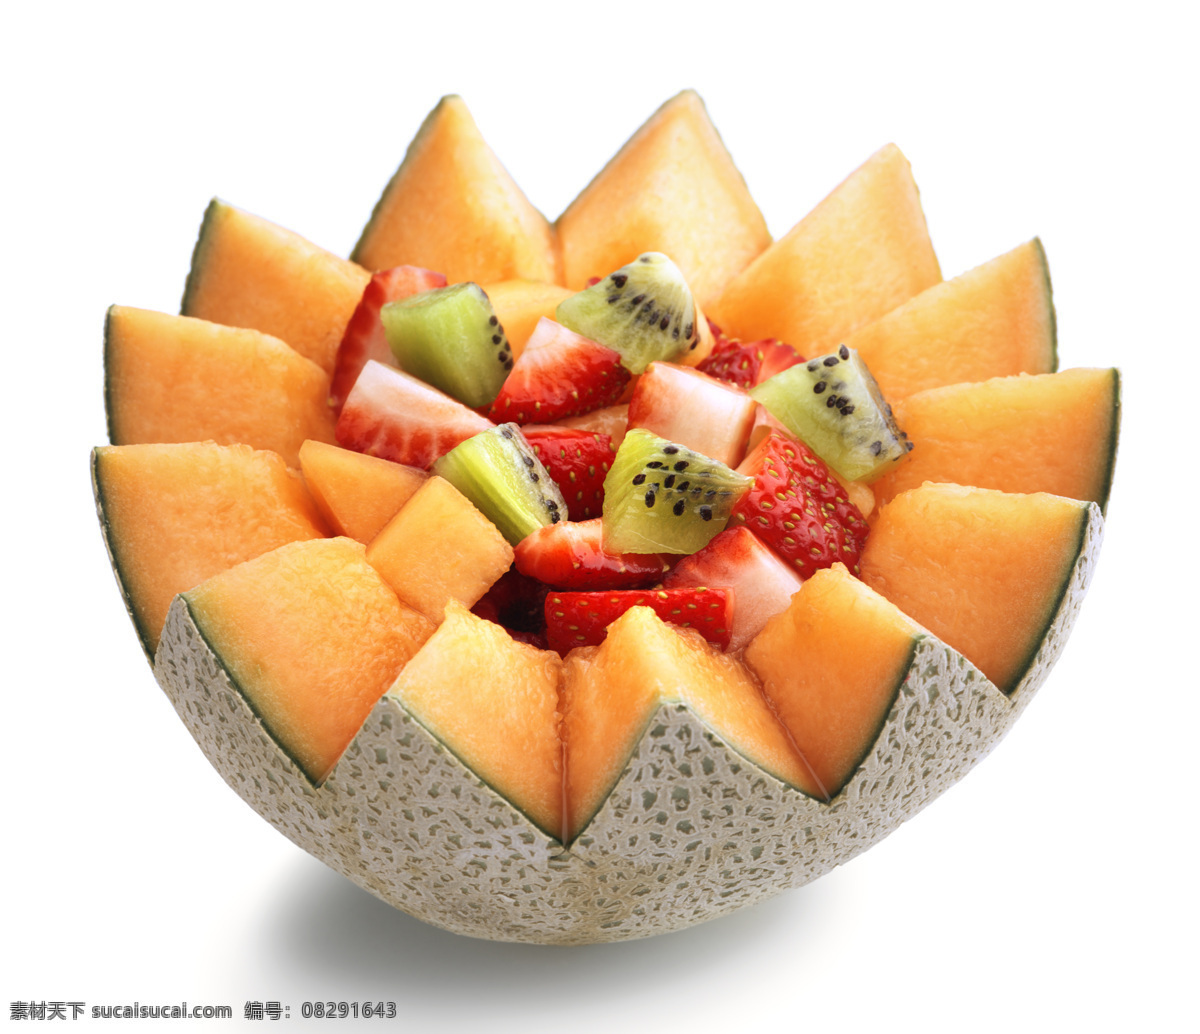 哈密瓜 水果 沙拉 草莓 猕猴桃 新鲜水果 水果摄影 果实 水果图片 餐饮美食